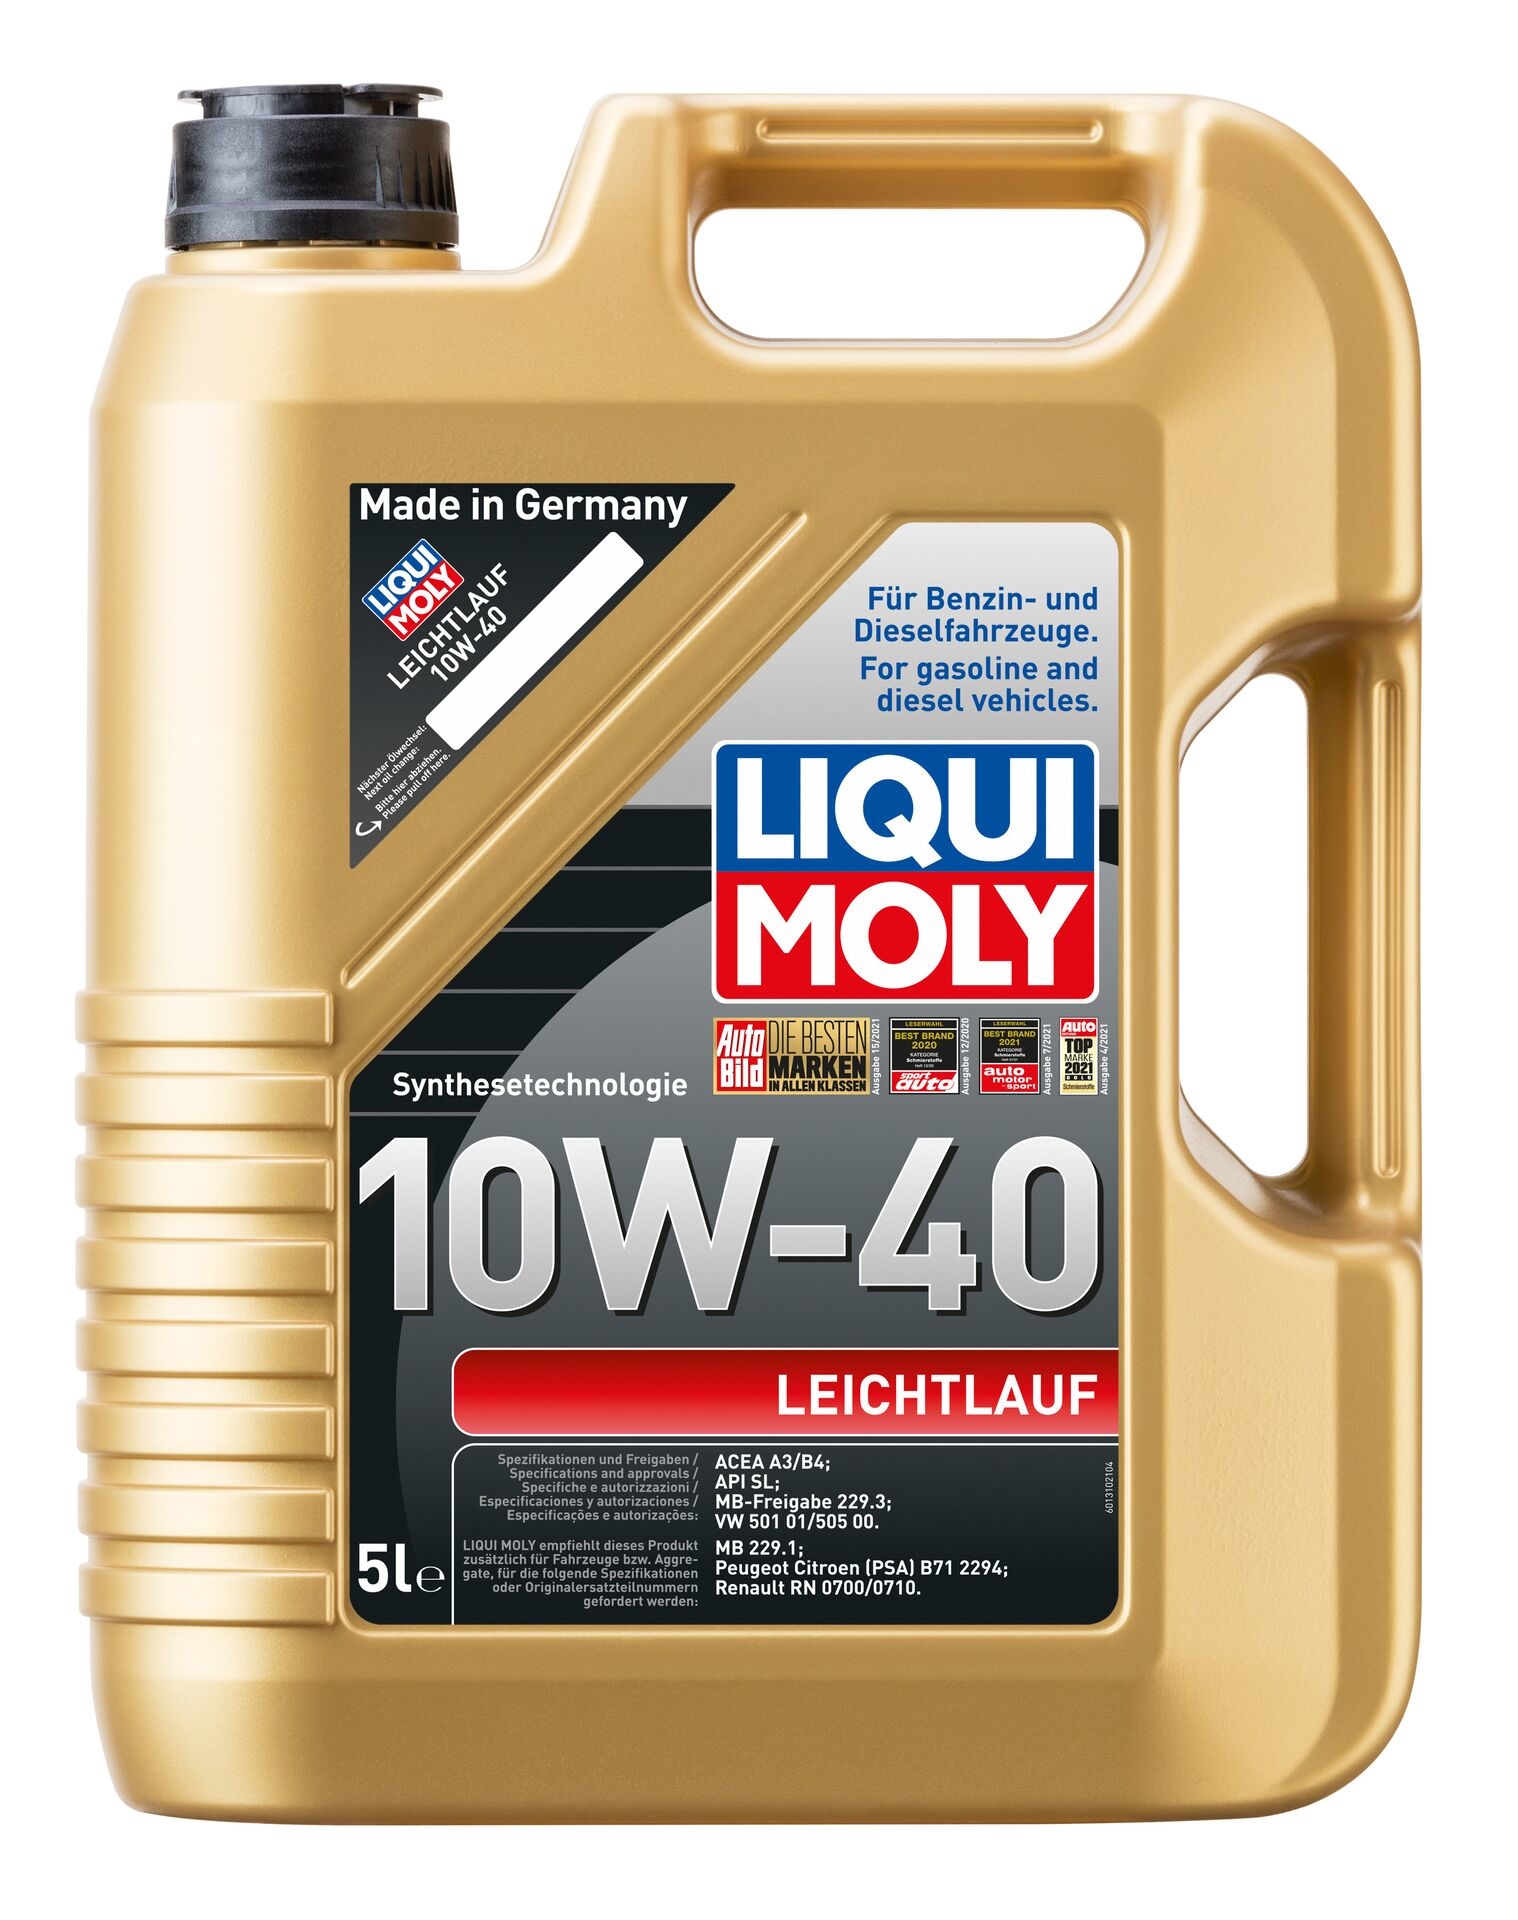 LIQUI-MOLY Motorenöl Leichtlauf 10W-40 5 l 